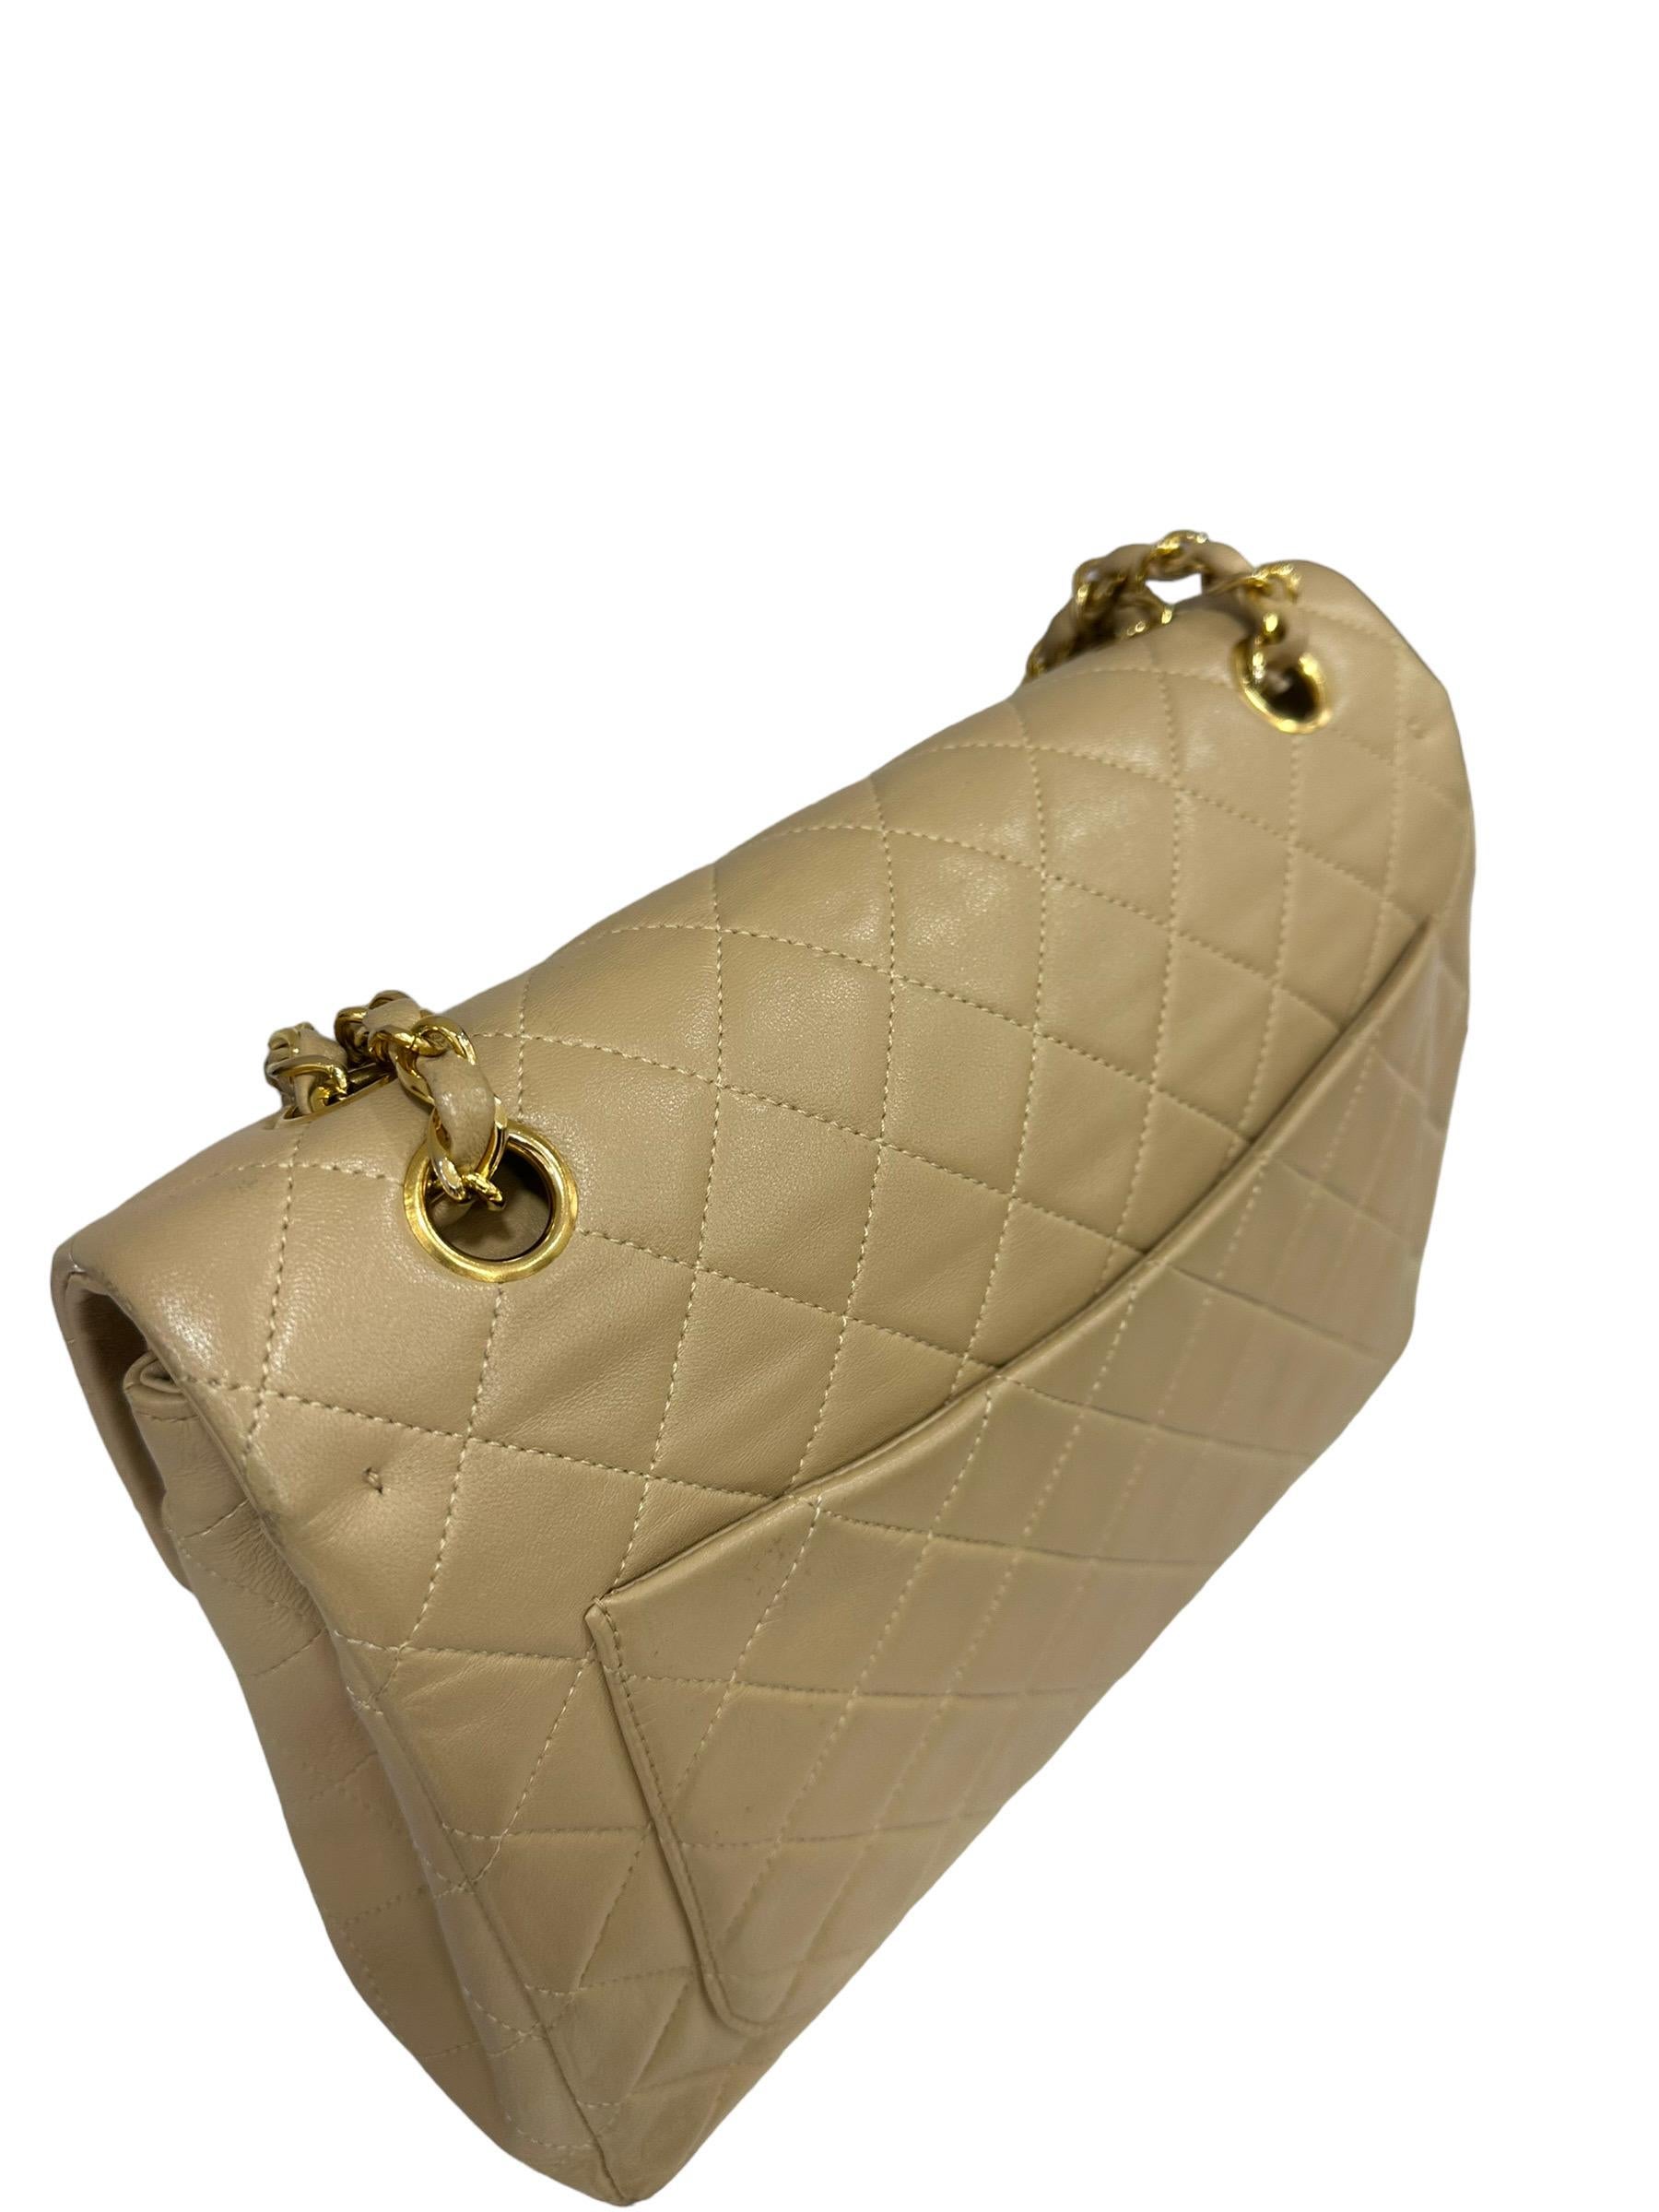 ‘90 Chanel Flap Vintage Beige Leather Shoulder Bag For Sale 4